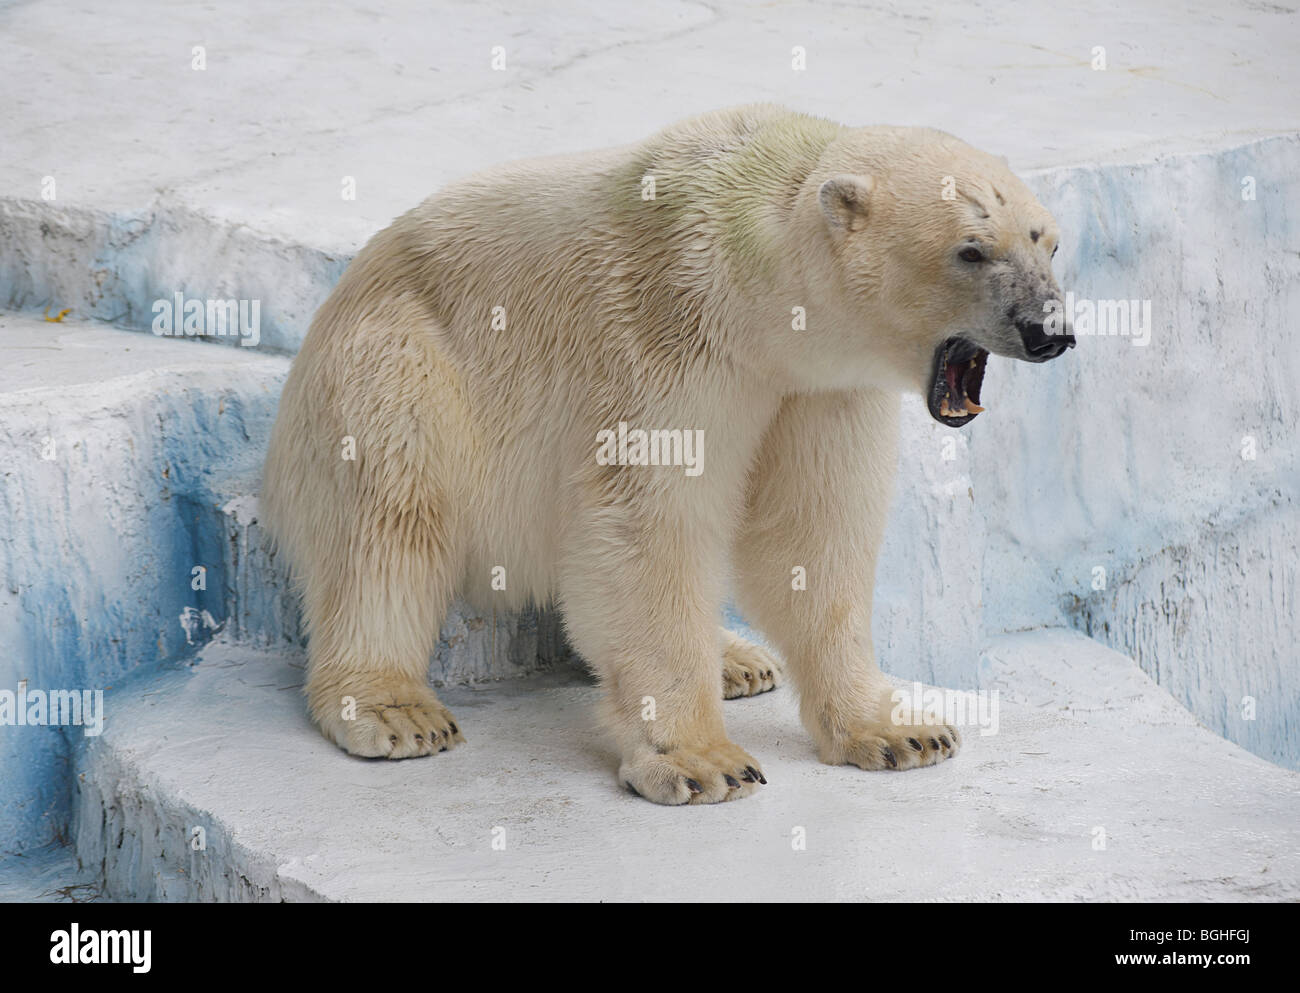 Polar Bear Cub Sitting and Roaring Wall Decal 